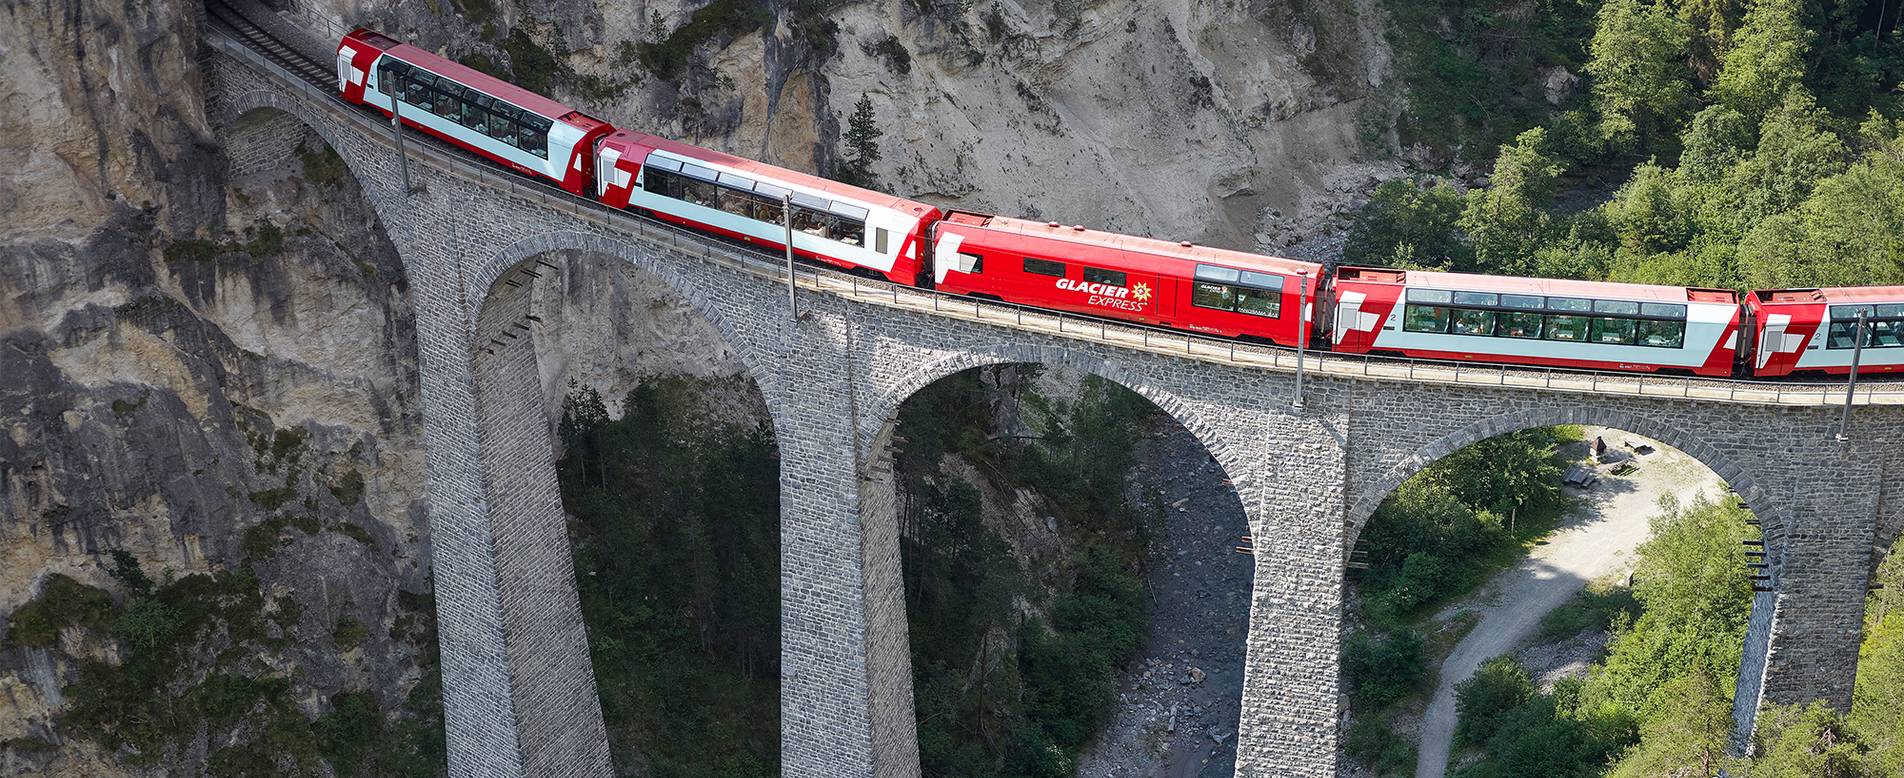 Ghețarul Express este printre cele mai Scenic Trips de tren în Europa